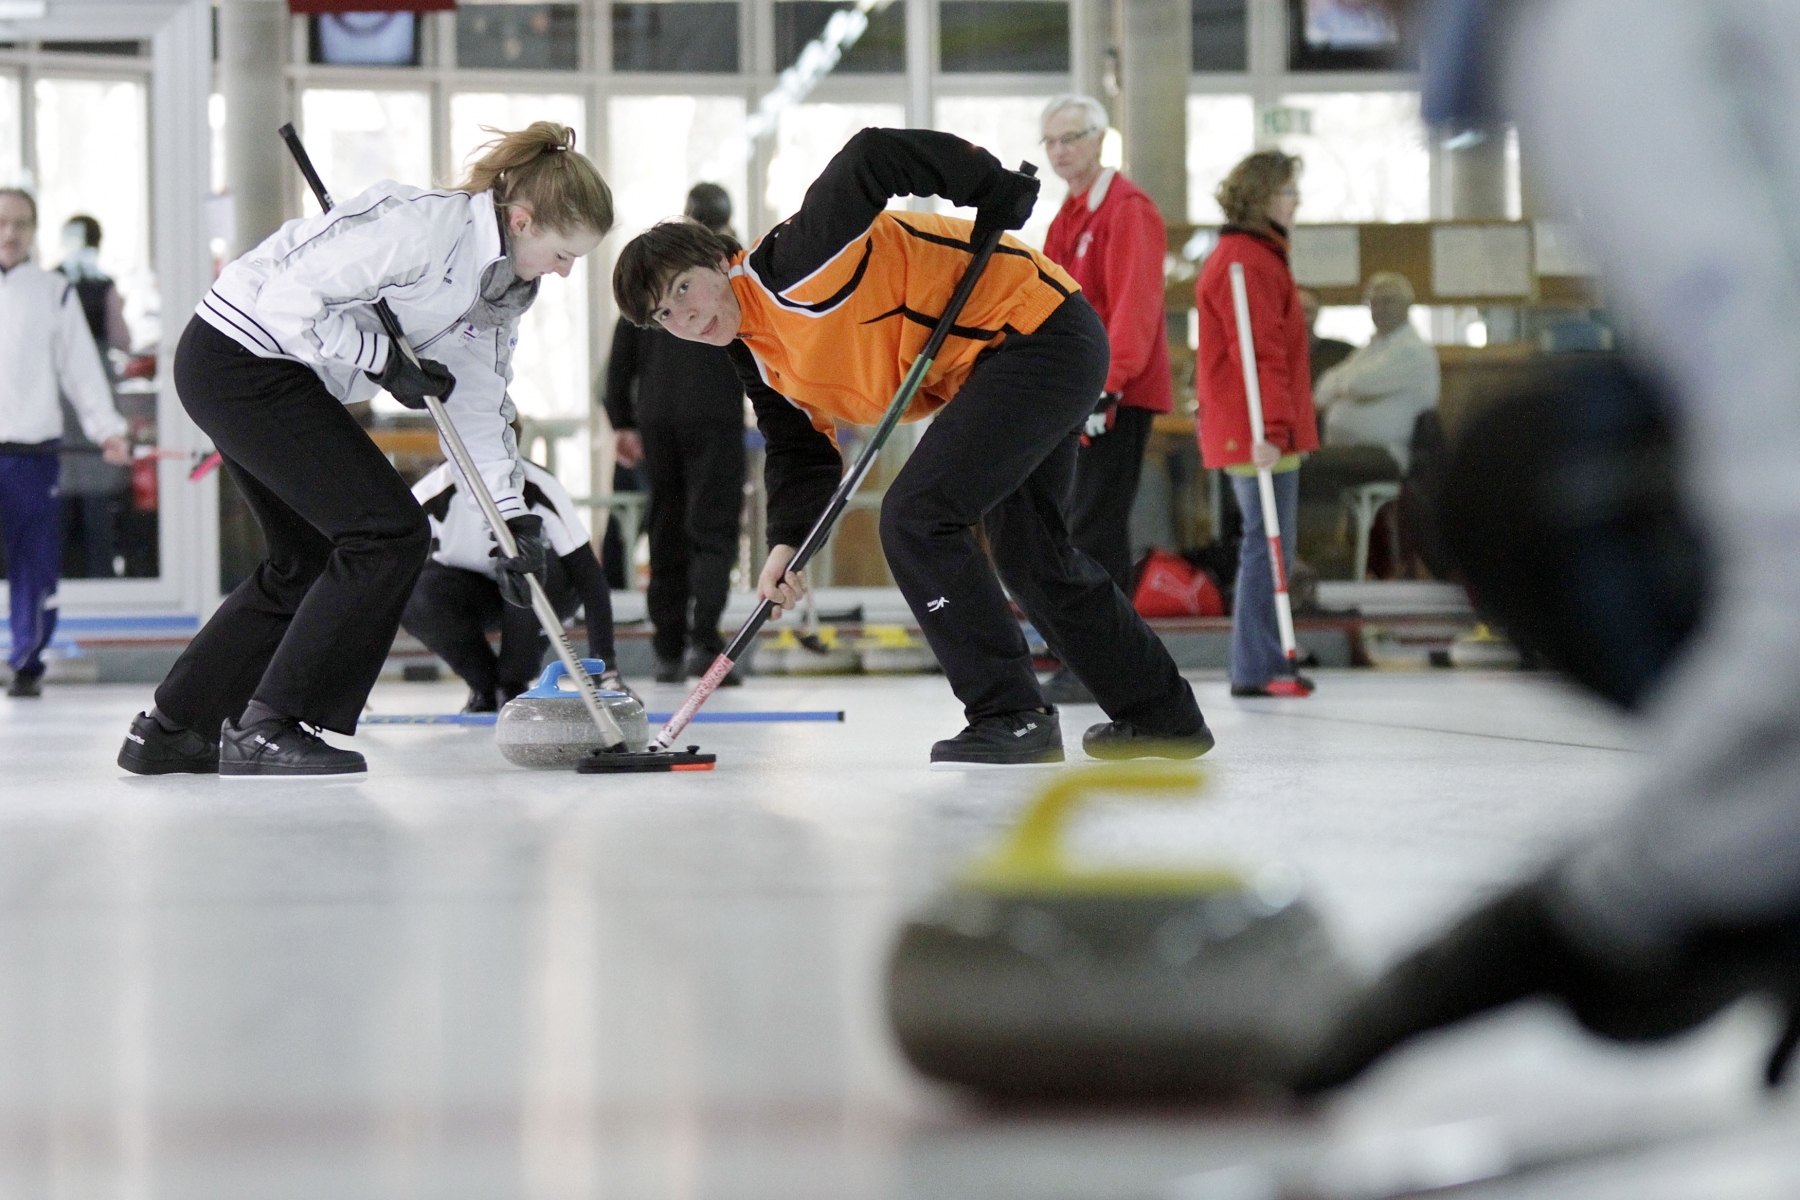 Les curleurs ont envahi la patinoire des Eaux-MInérales dimanche pour le traditionnel tournoi international du Curling Club Morges.